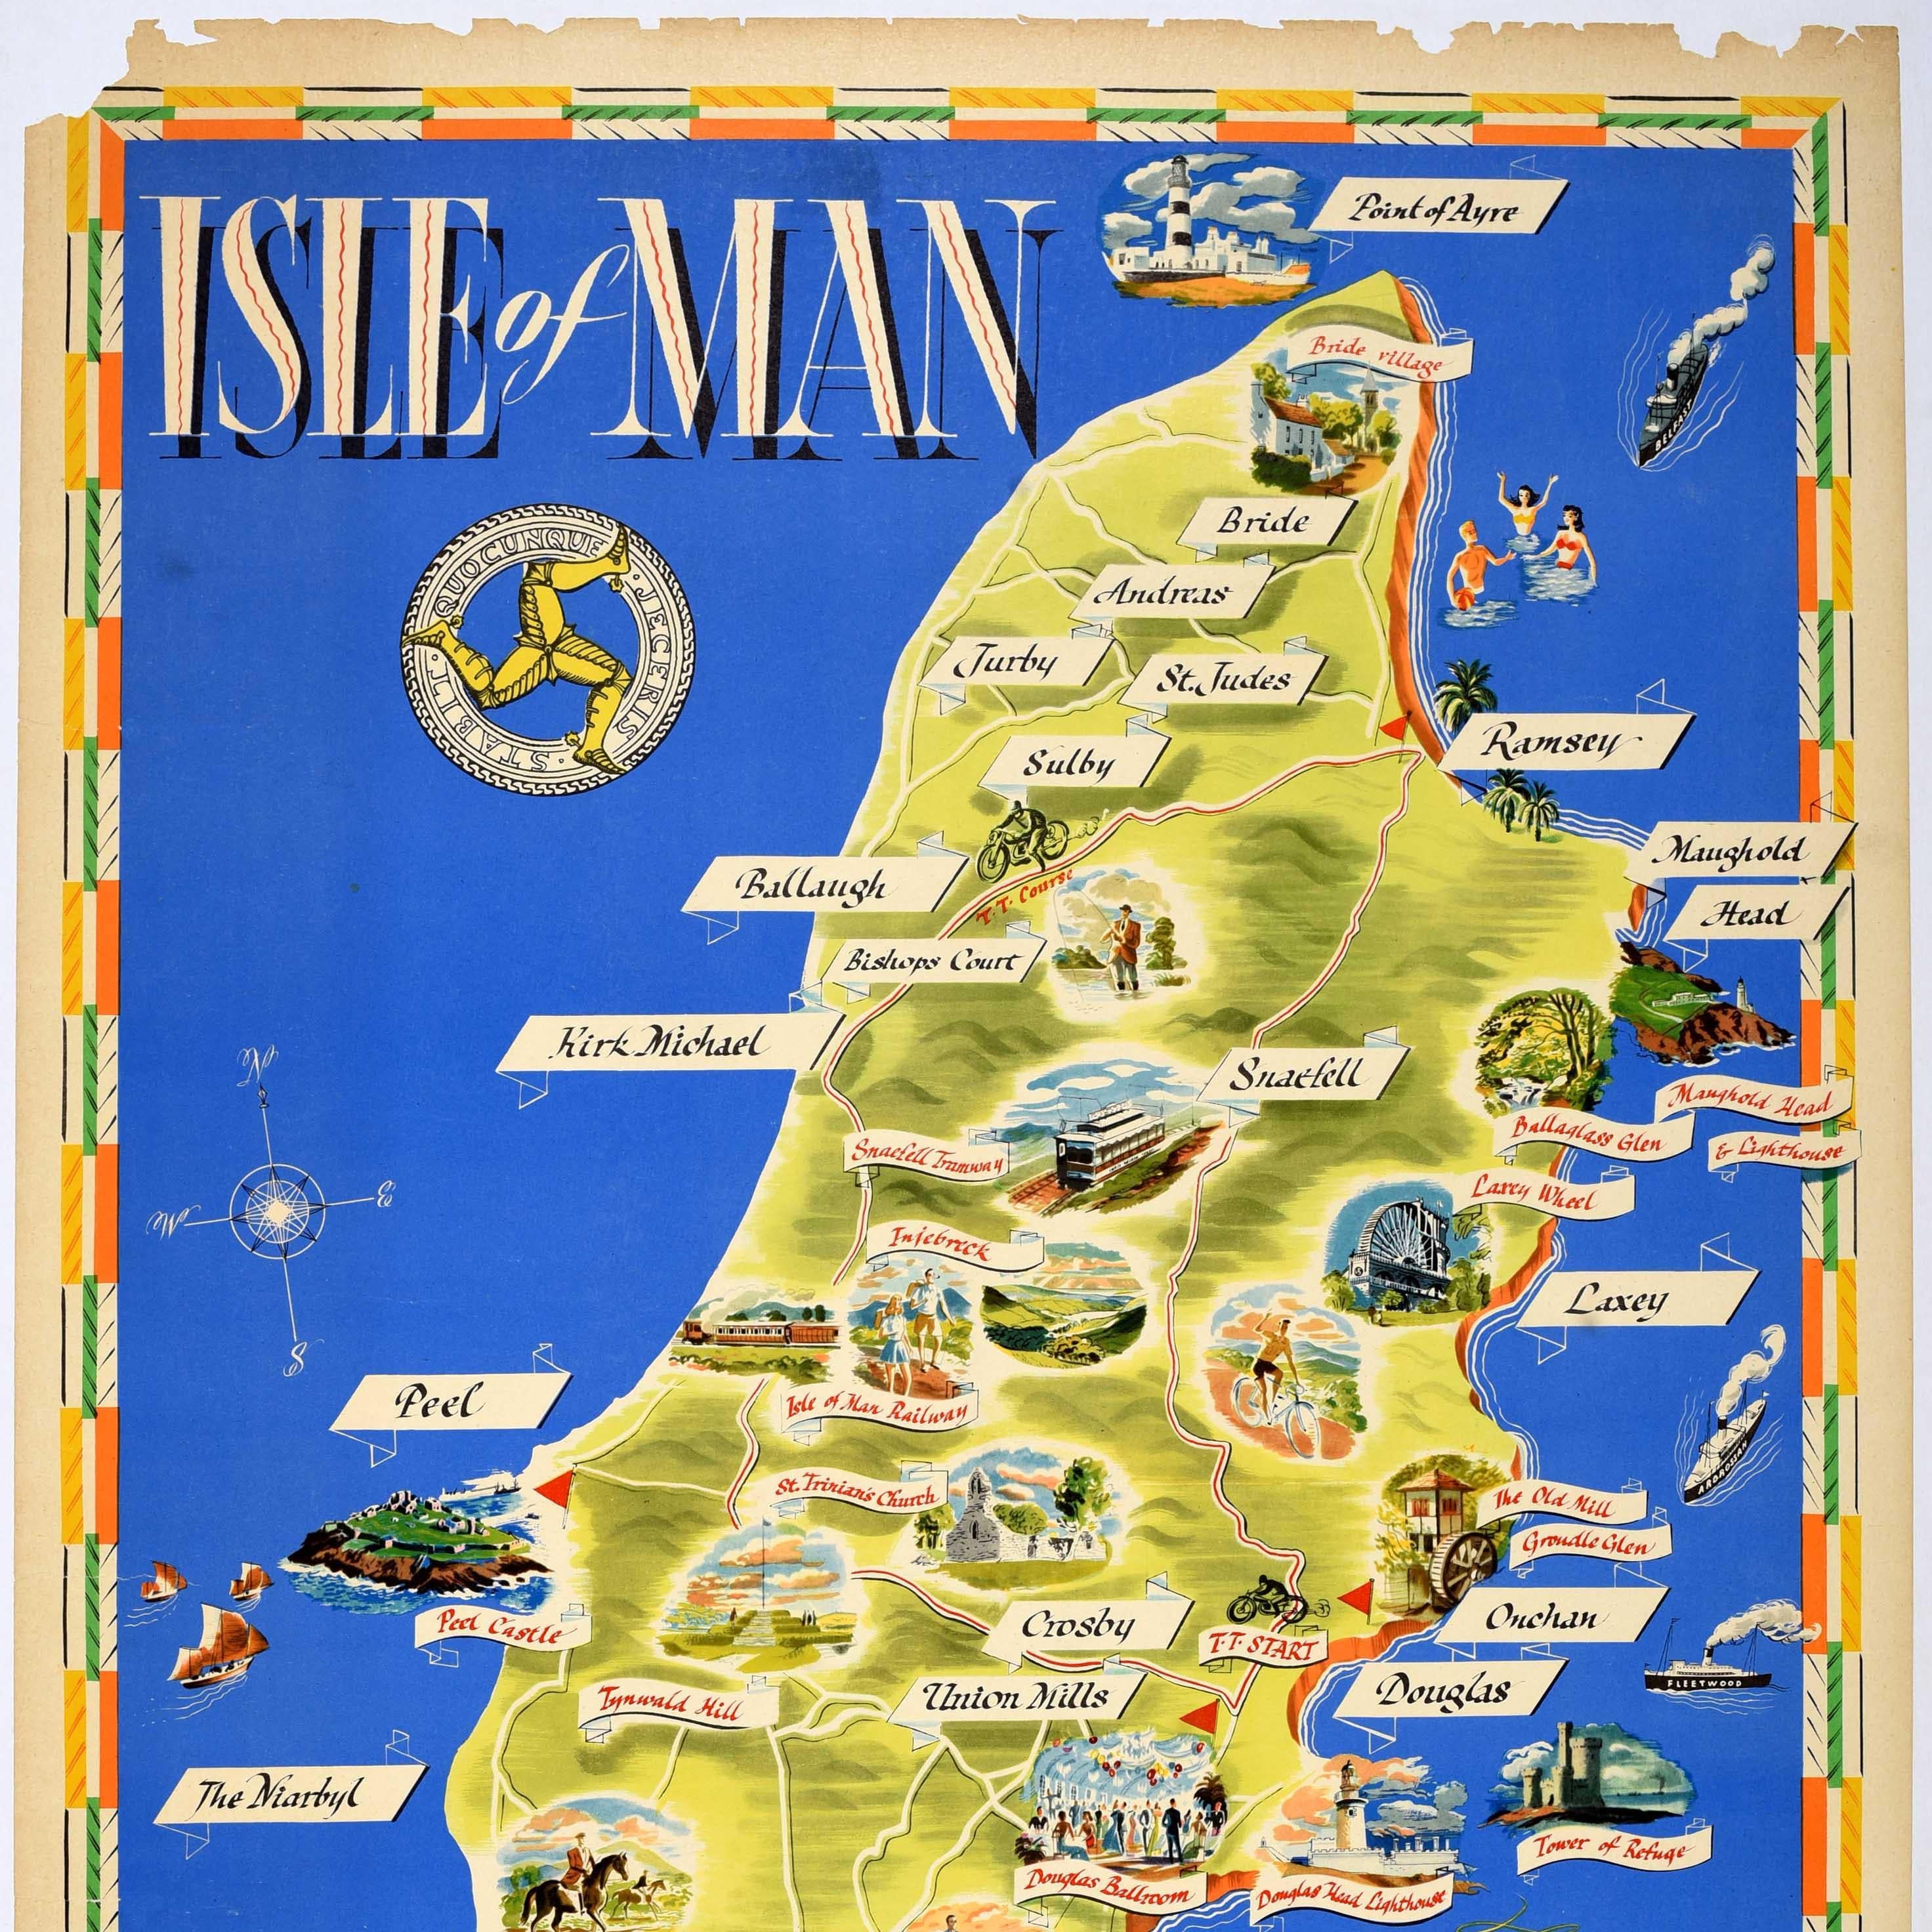 Original Vintage Train Travel Map Poster Isle Of Man British Railways UK Manx - Beige Print by Unknown